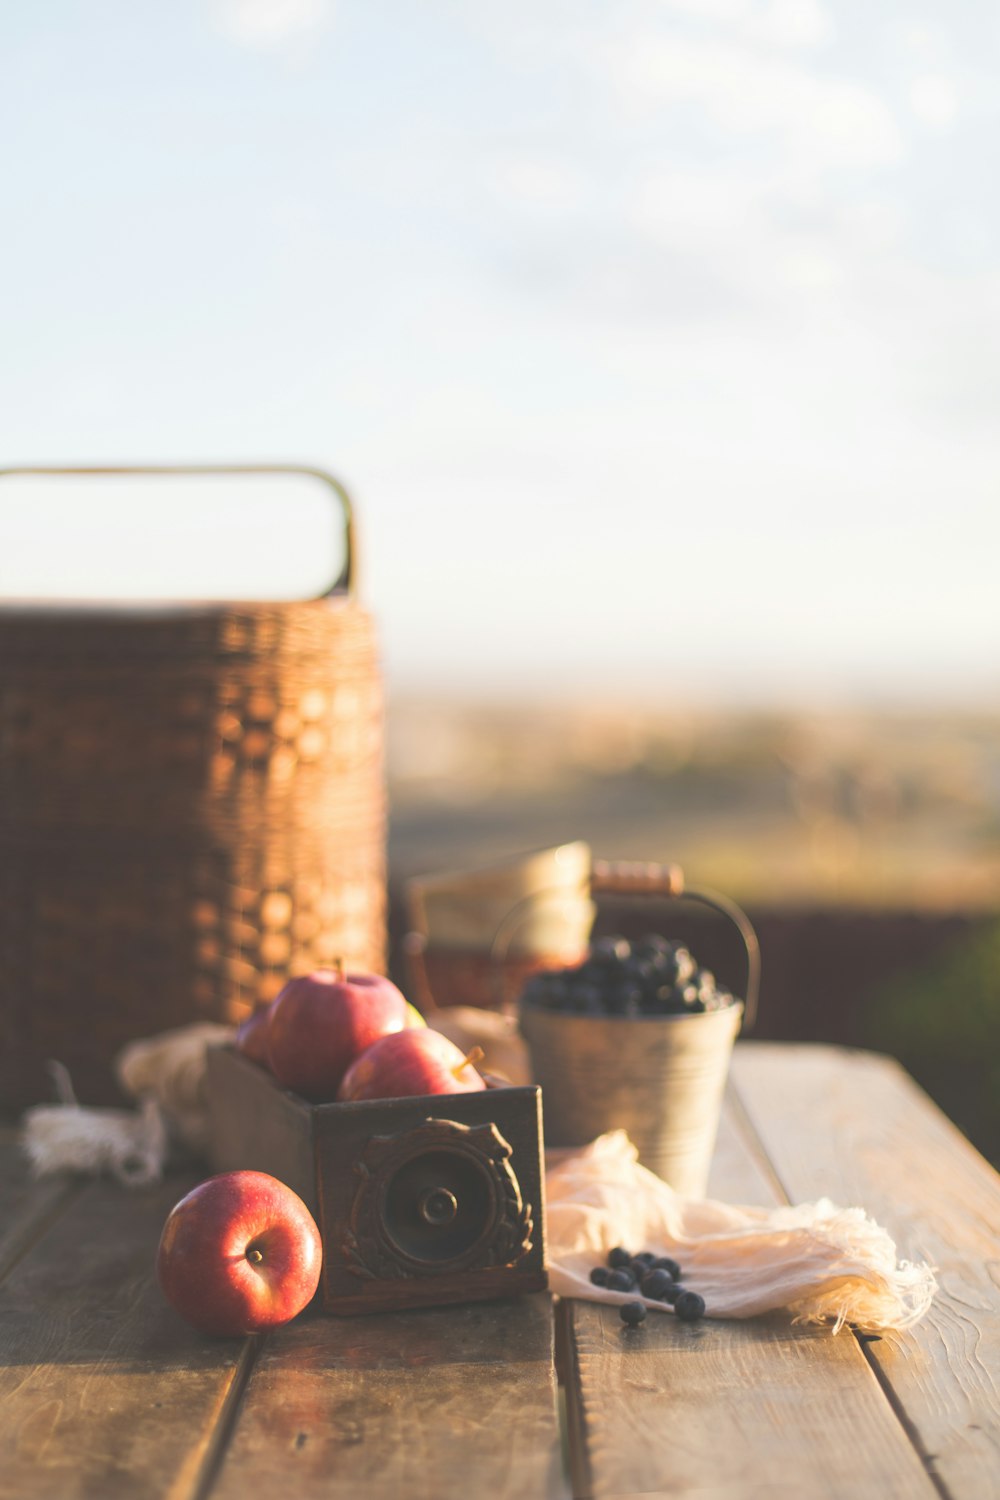 Manzana crujiente con miel al lado de las cestas